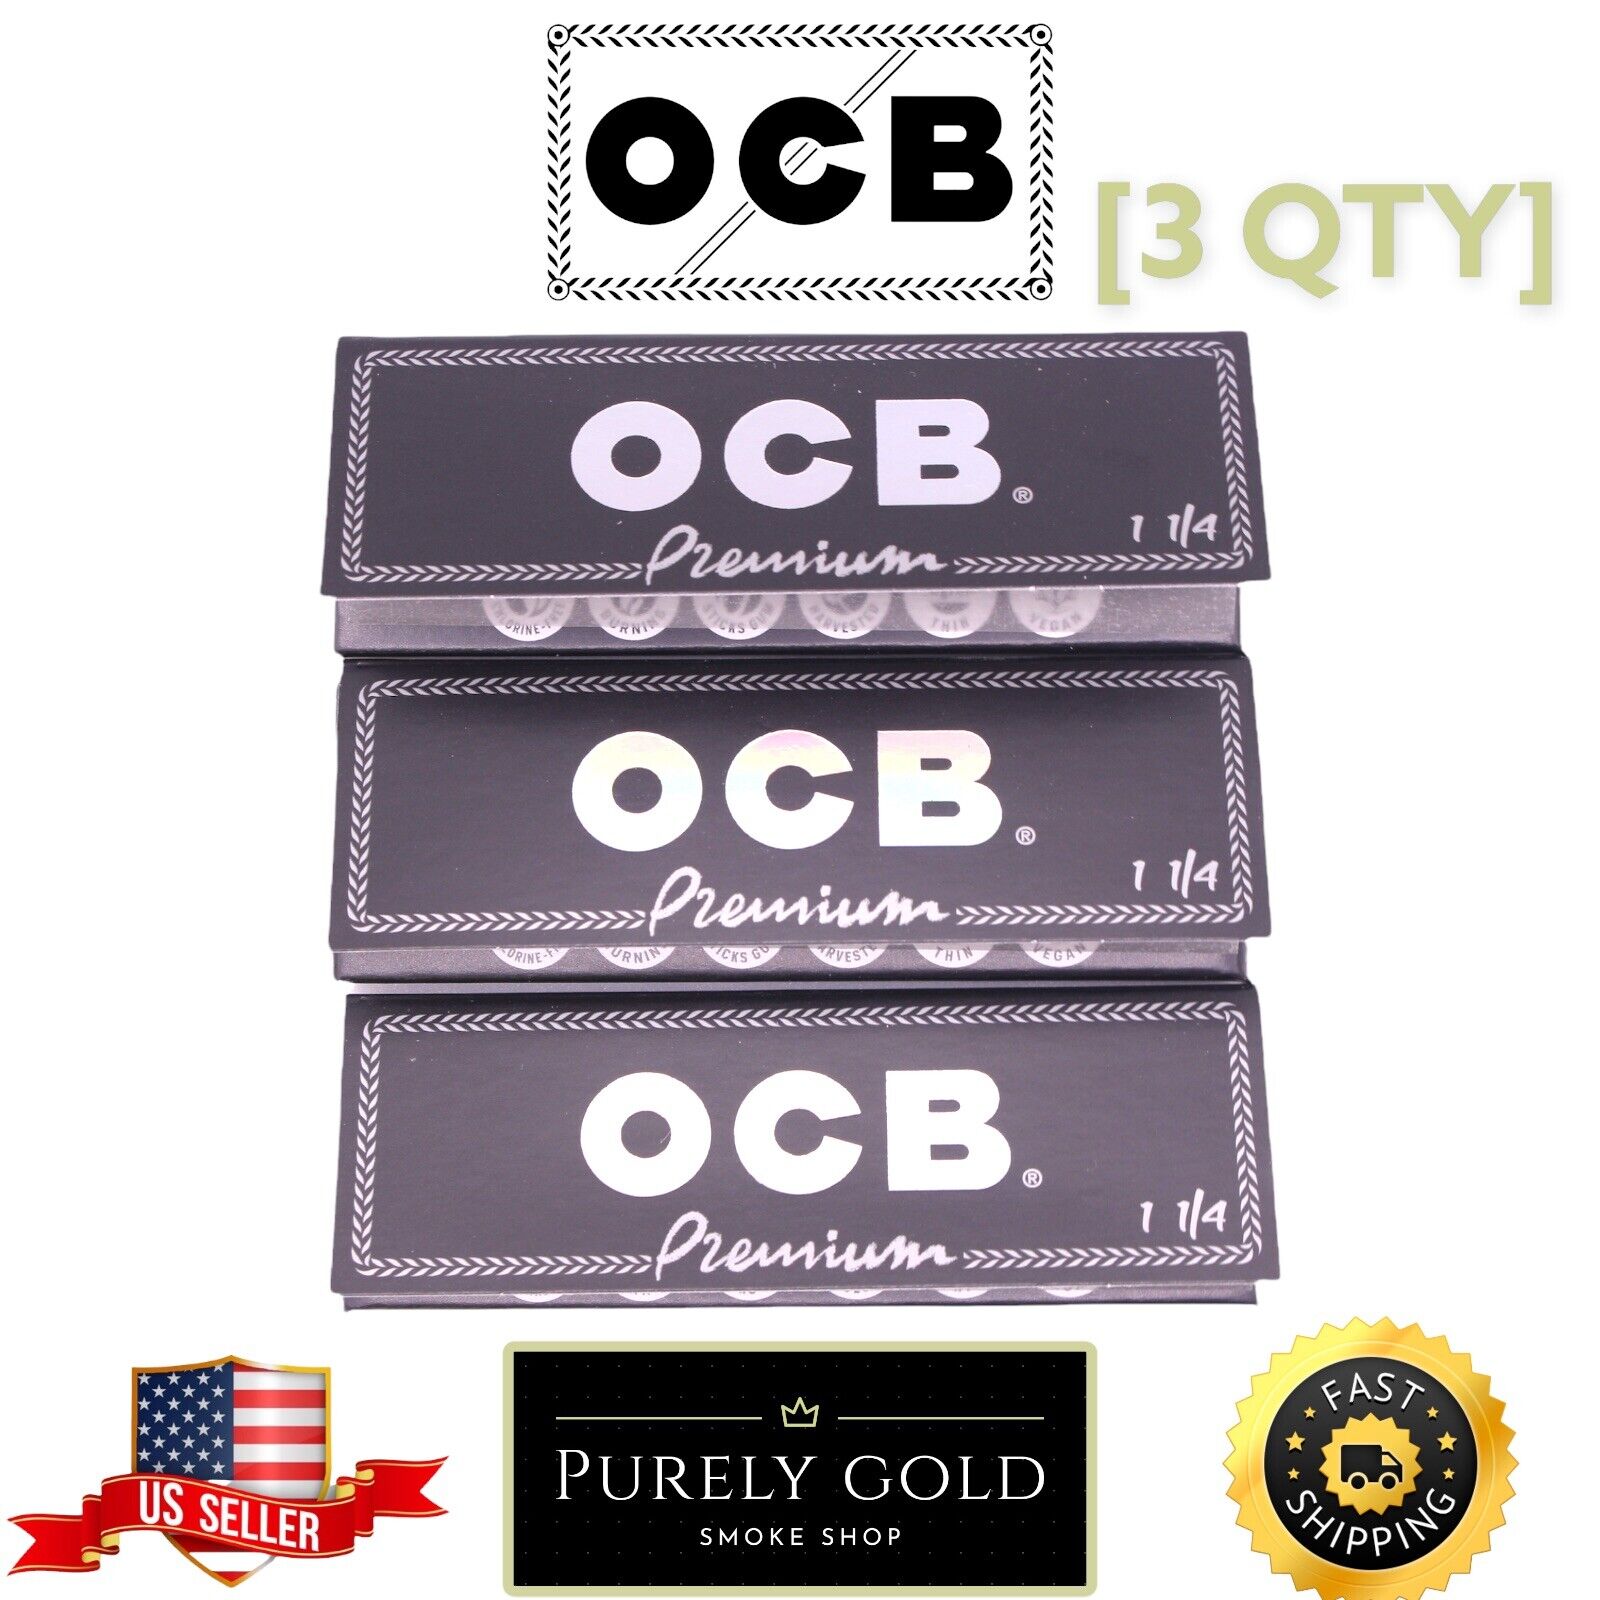 3x Packs OCB Premium 1 1/4 ( 50 Leaves / Papers Each Pack )